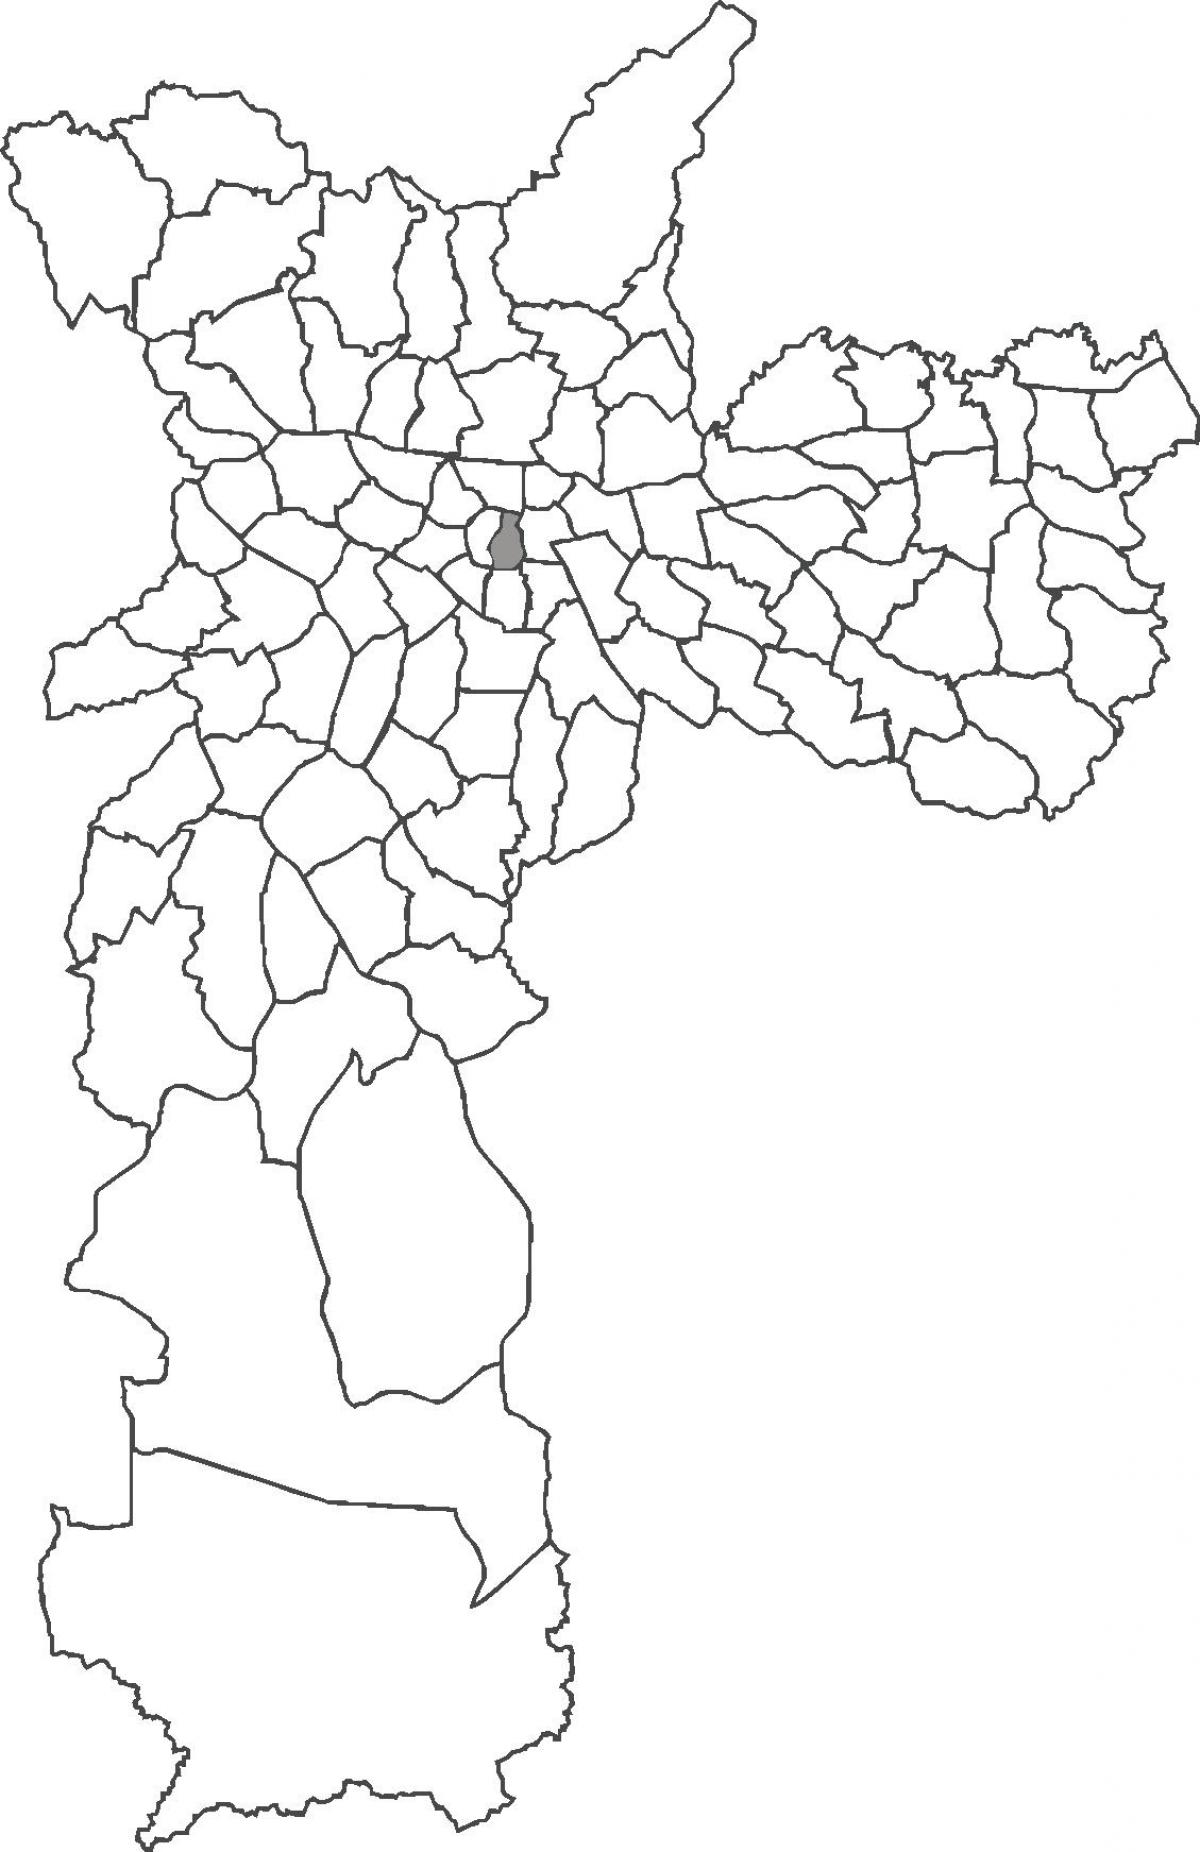 মানচিত্র Sé জেলা